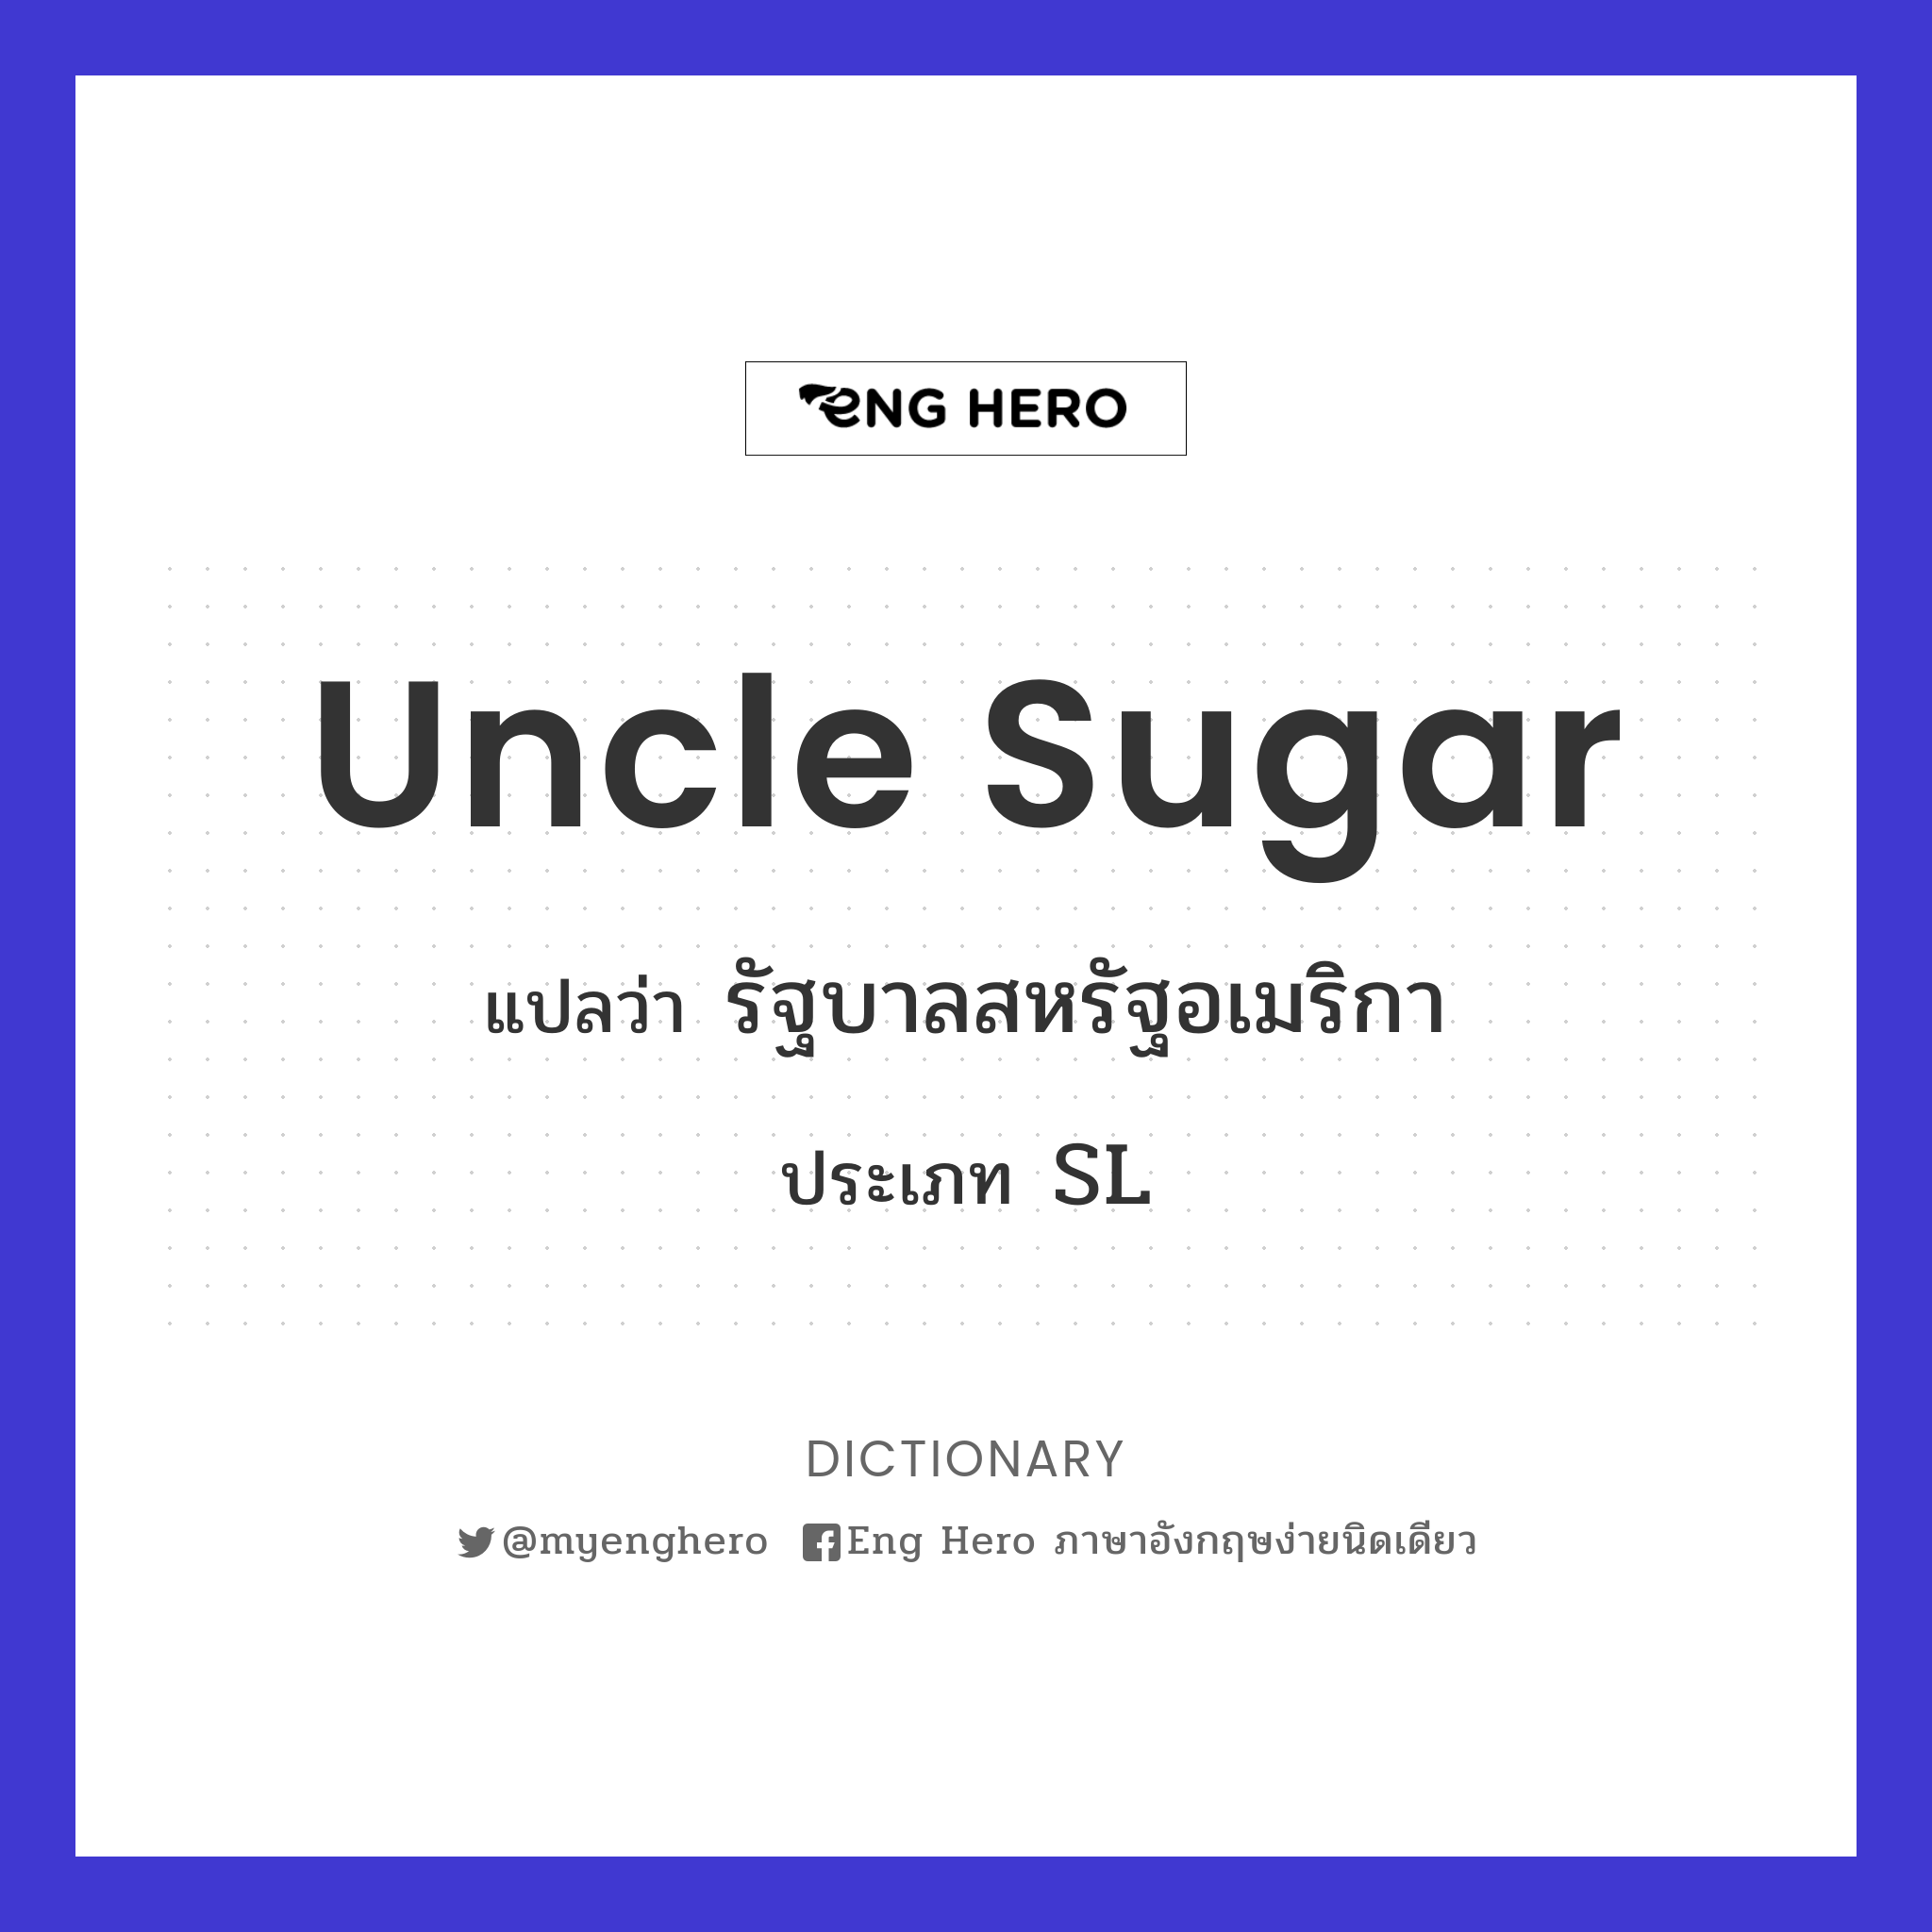 Uncle Sugar